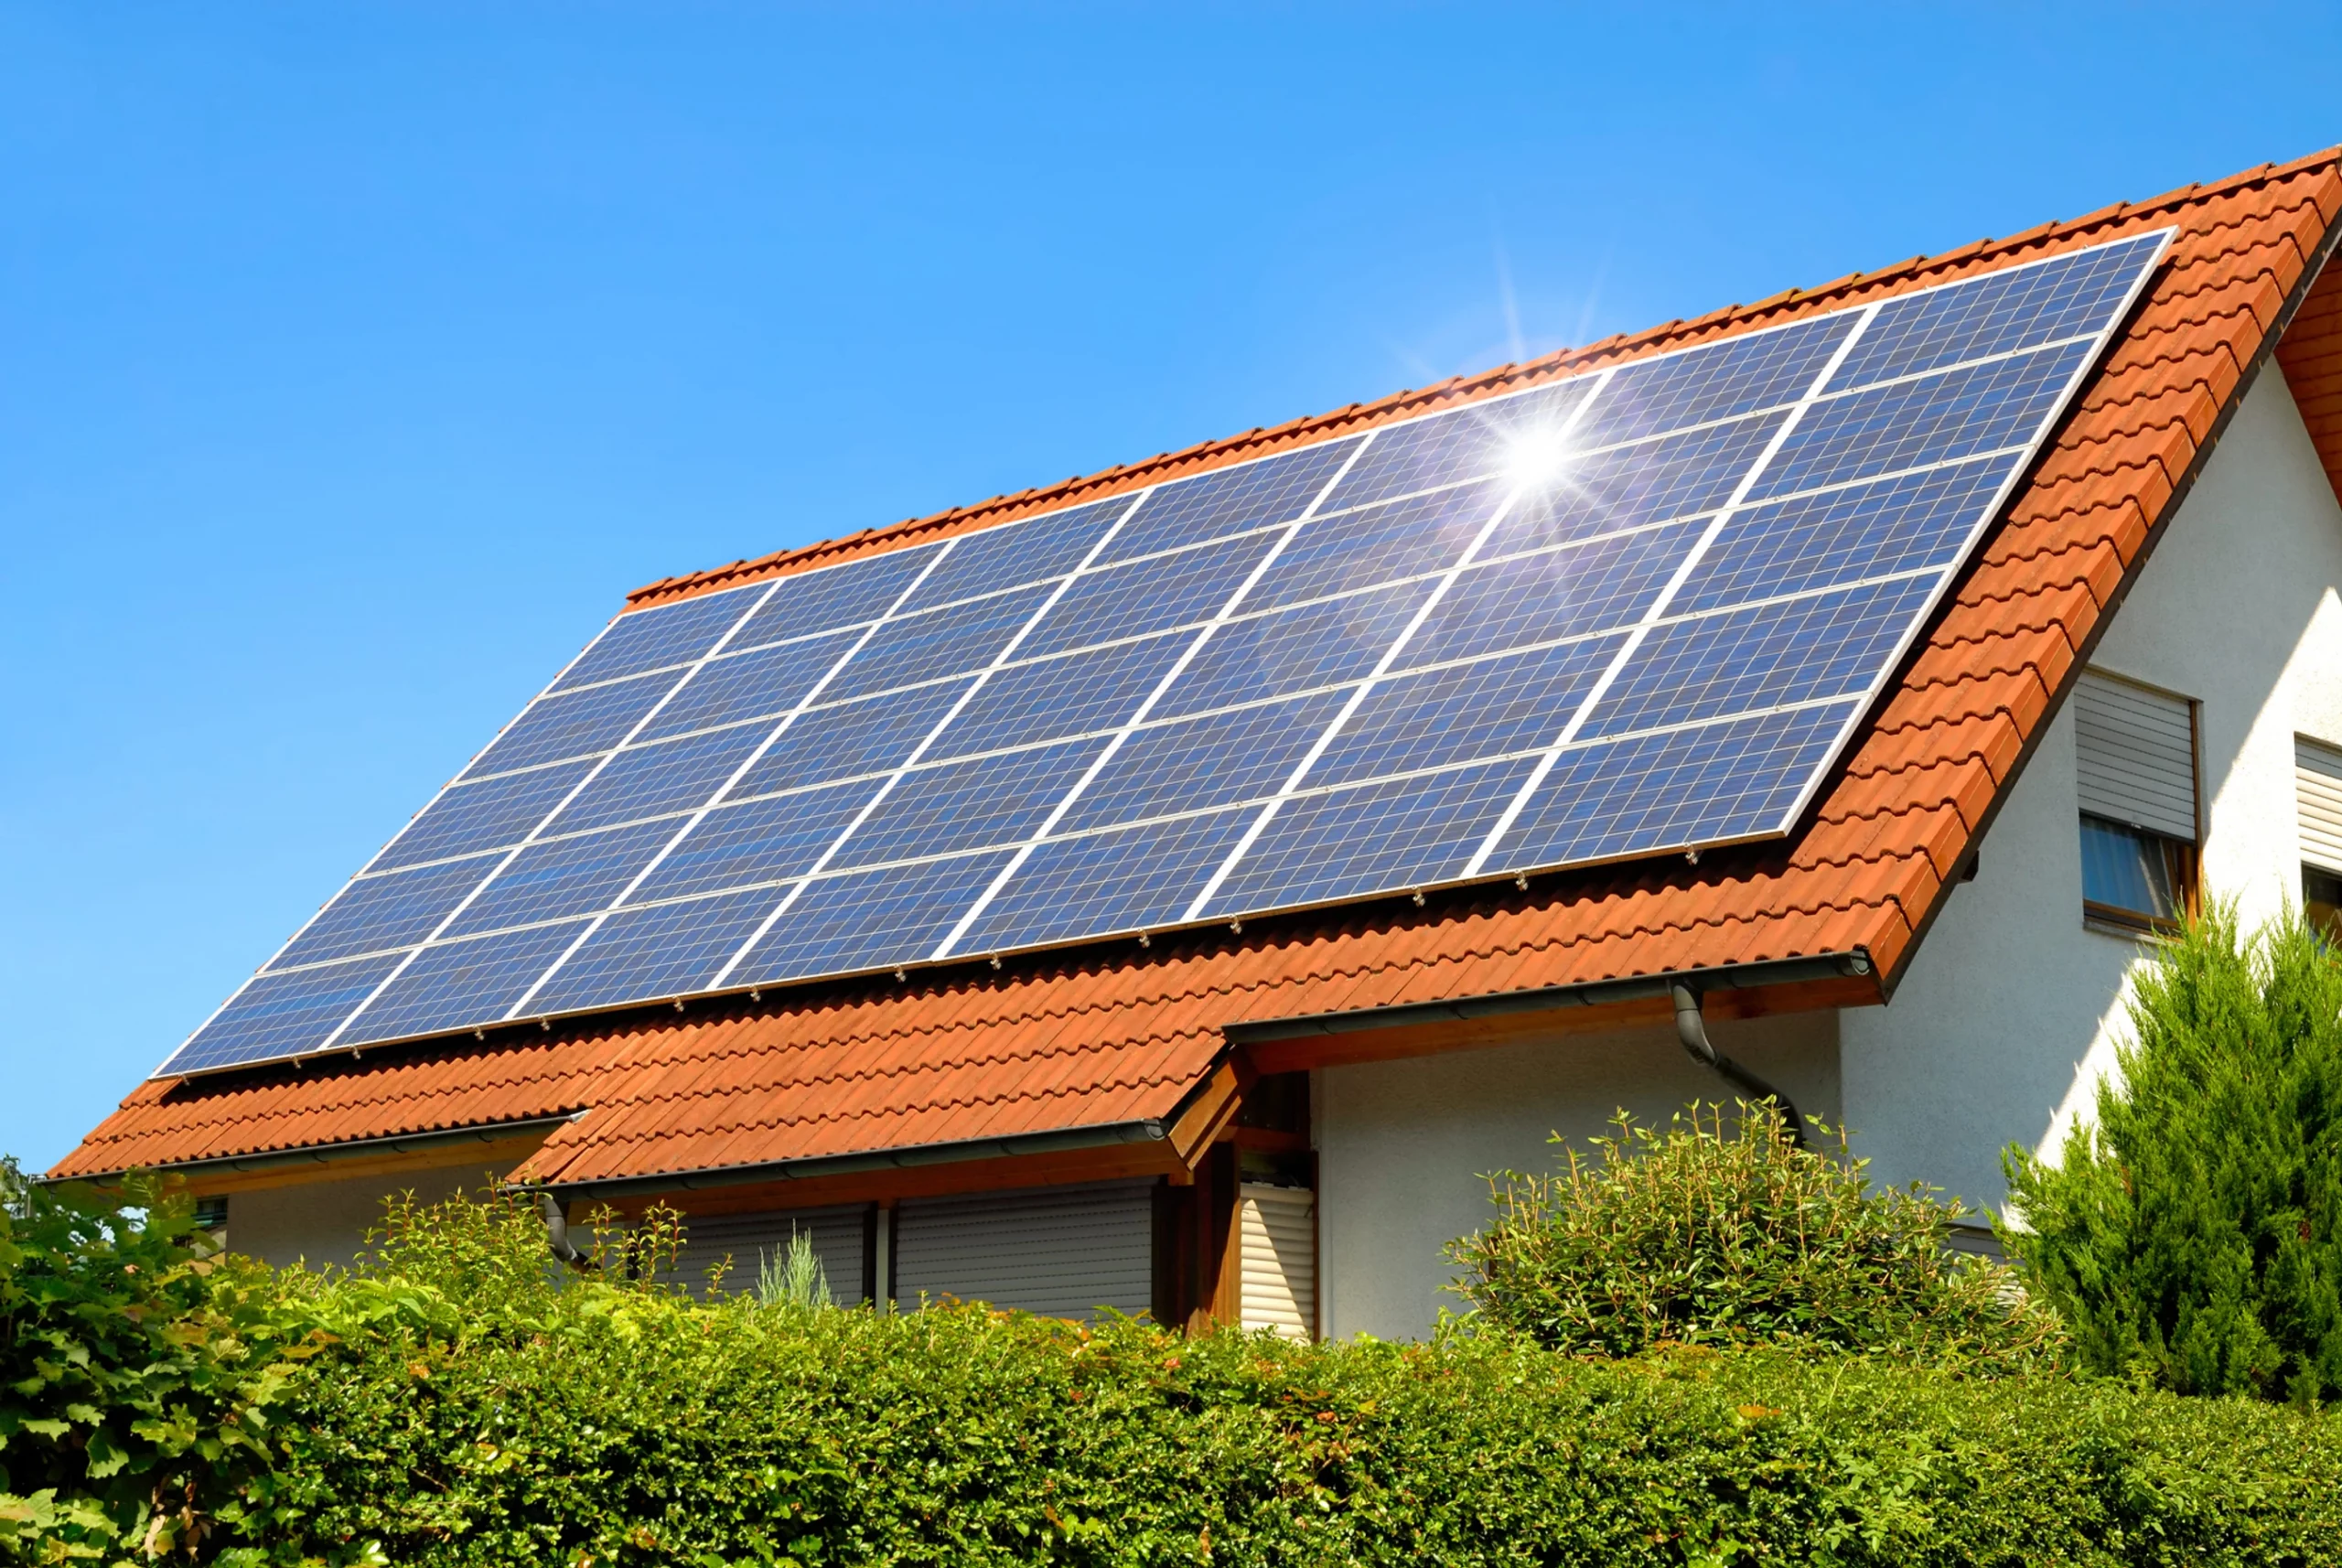 Solarmodule auf einem roten Dach eines Einfamilienhauses